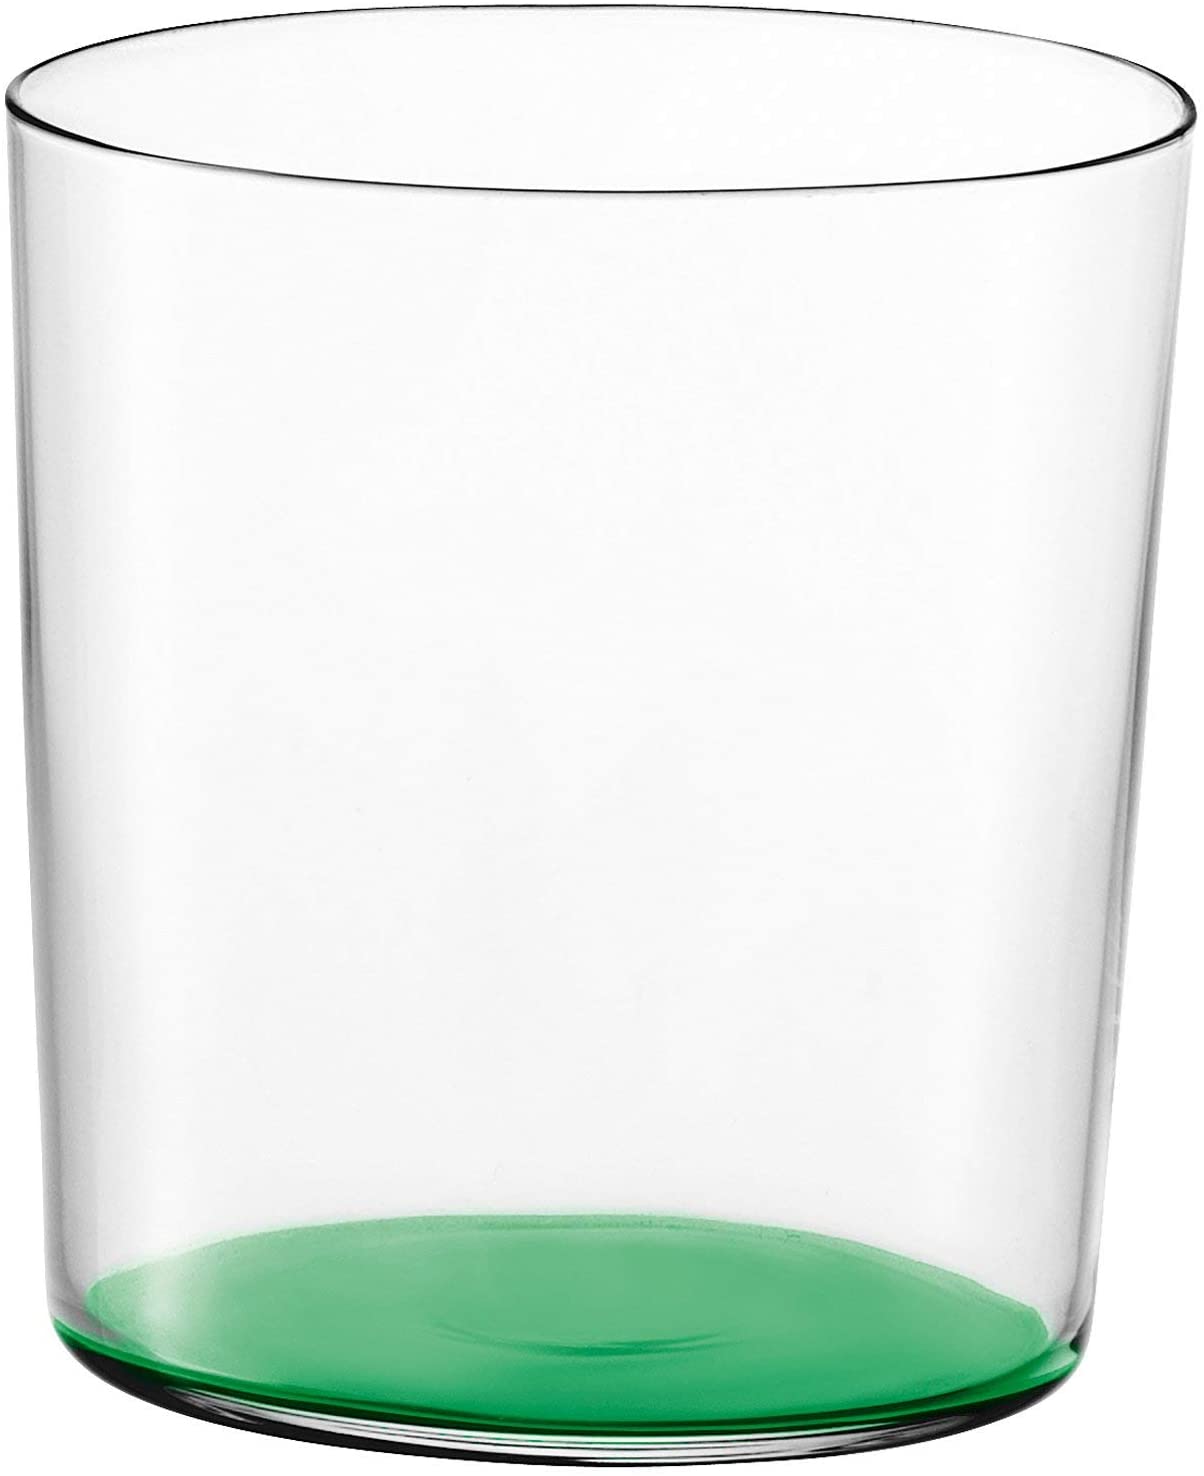 LSA – Gio – Cup 390ml – Green GI10 1 Universal Glass G060 13 – 242)